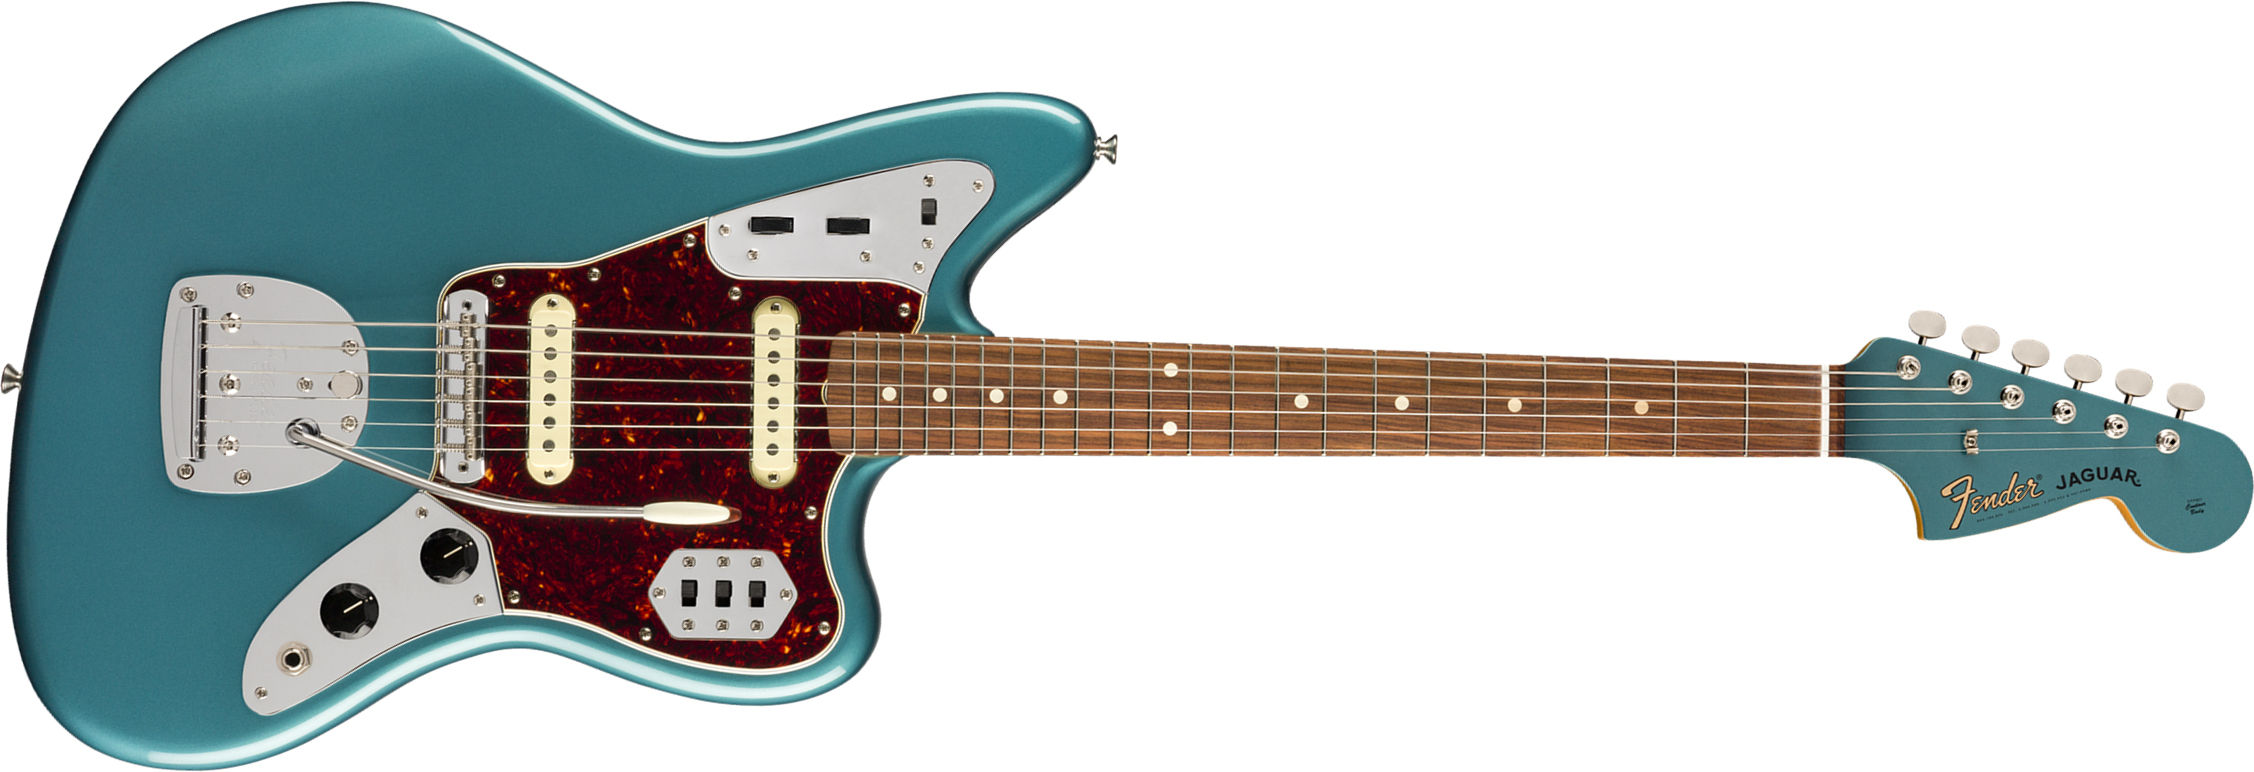 Fender Jaguar 60s Vintera Vintage Mex Pf - Ocean Turquoise - Retro-Rock-E-Gitarre - Main picture